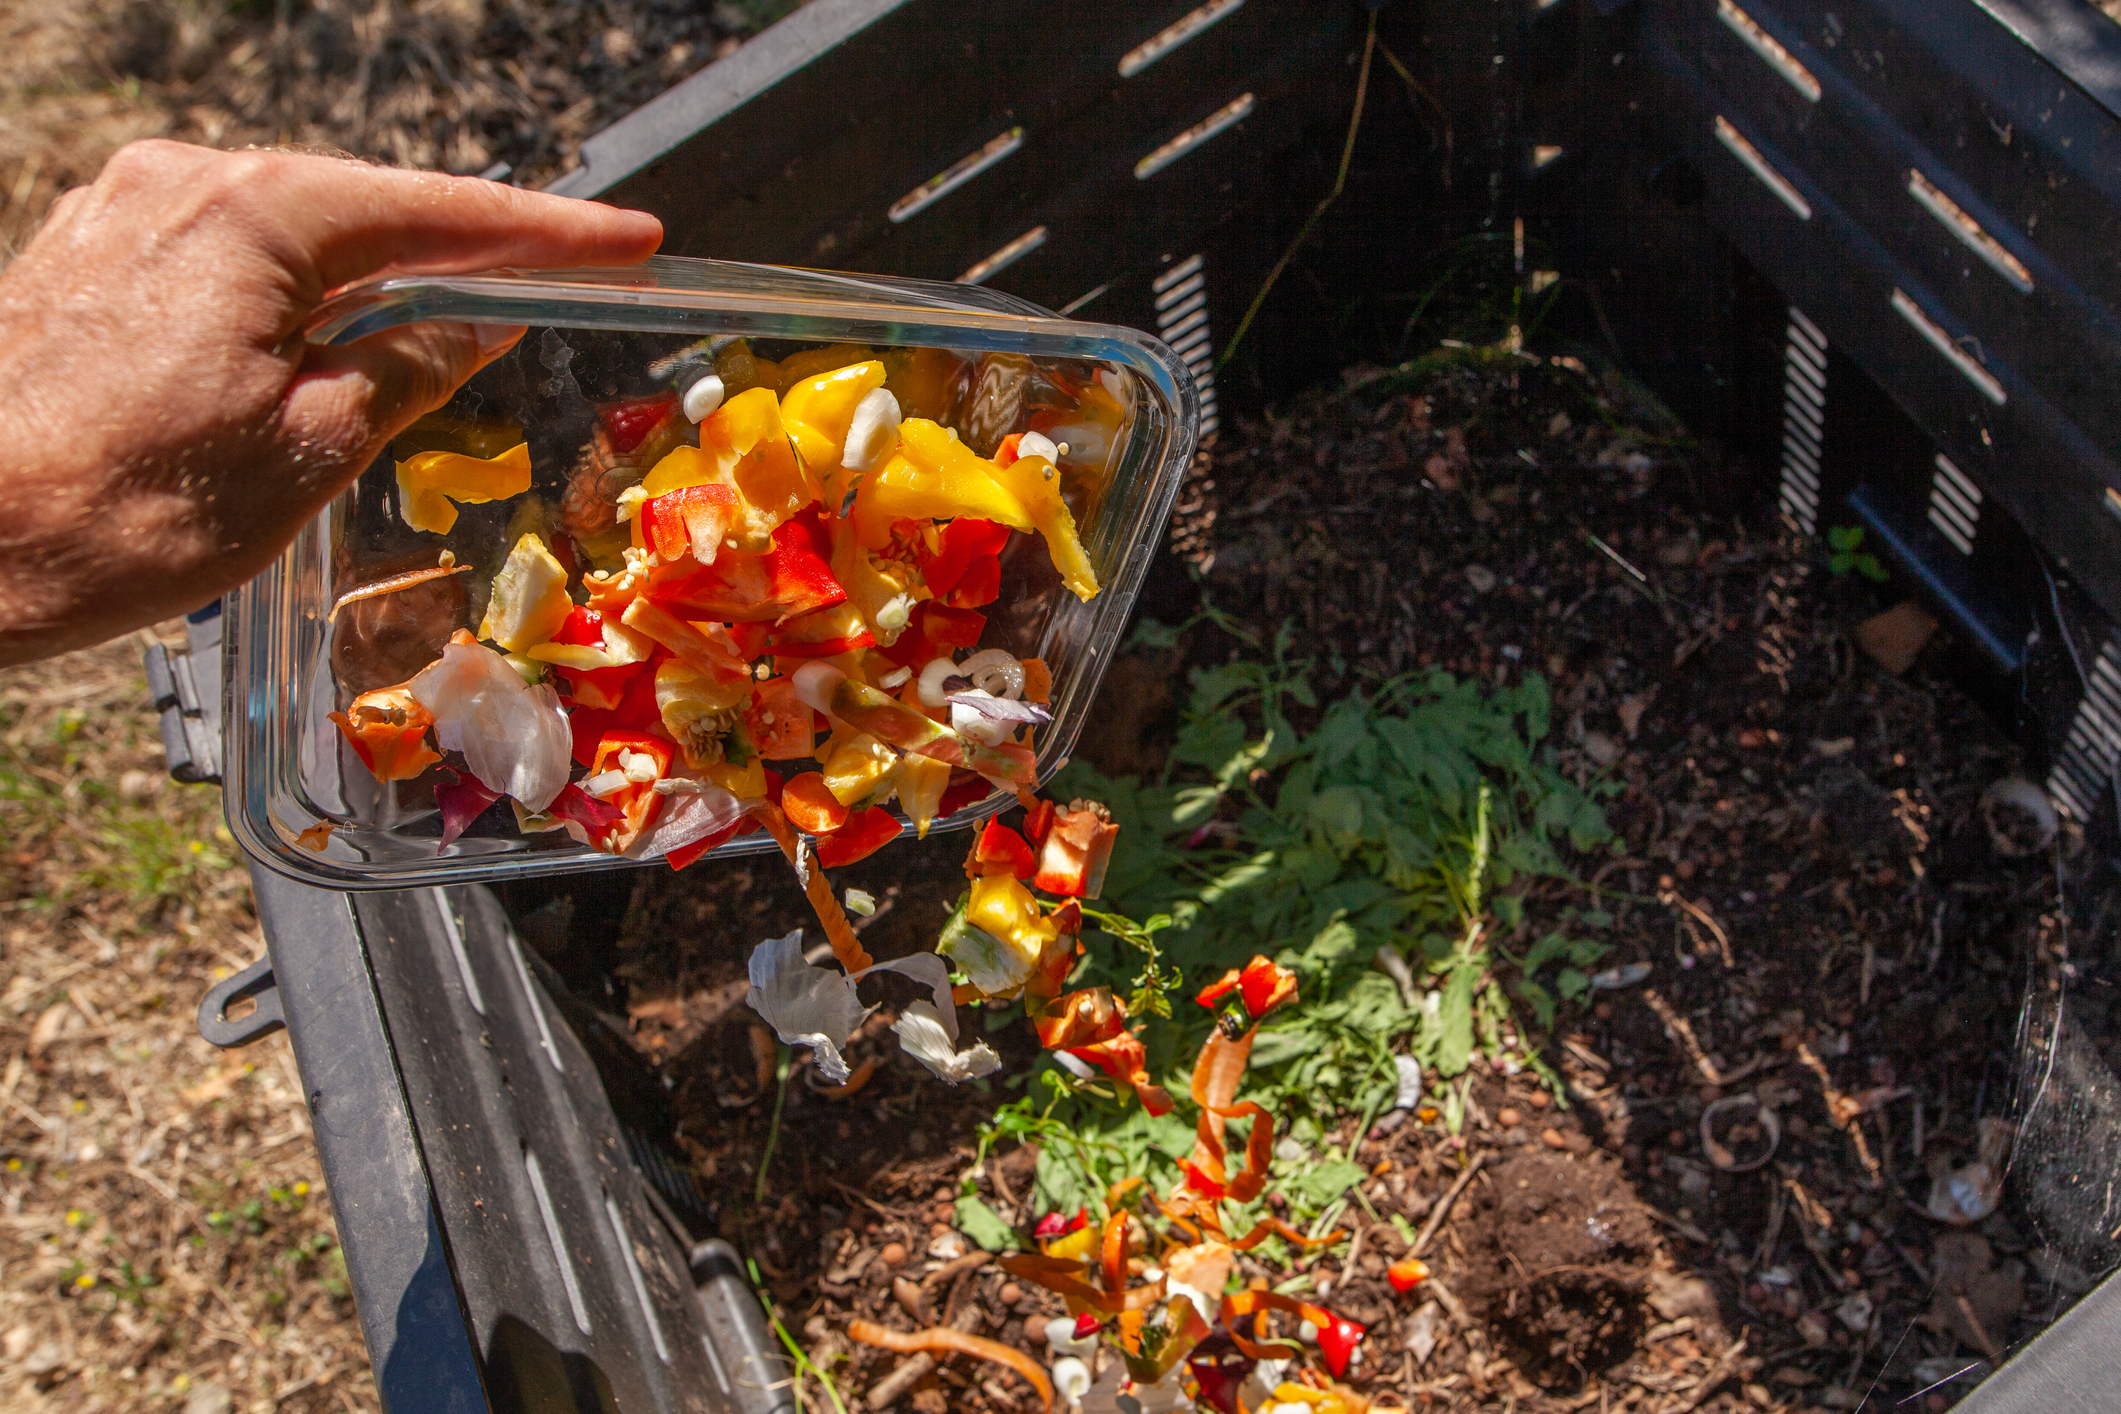 Compost obligatoire : comment dissimuler son bac pour en faire un atout  déco dans le jardin ? - Le Parisien